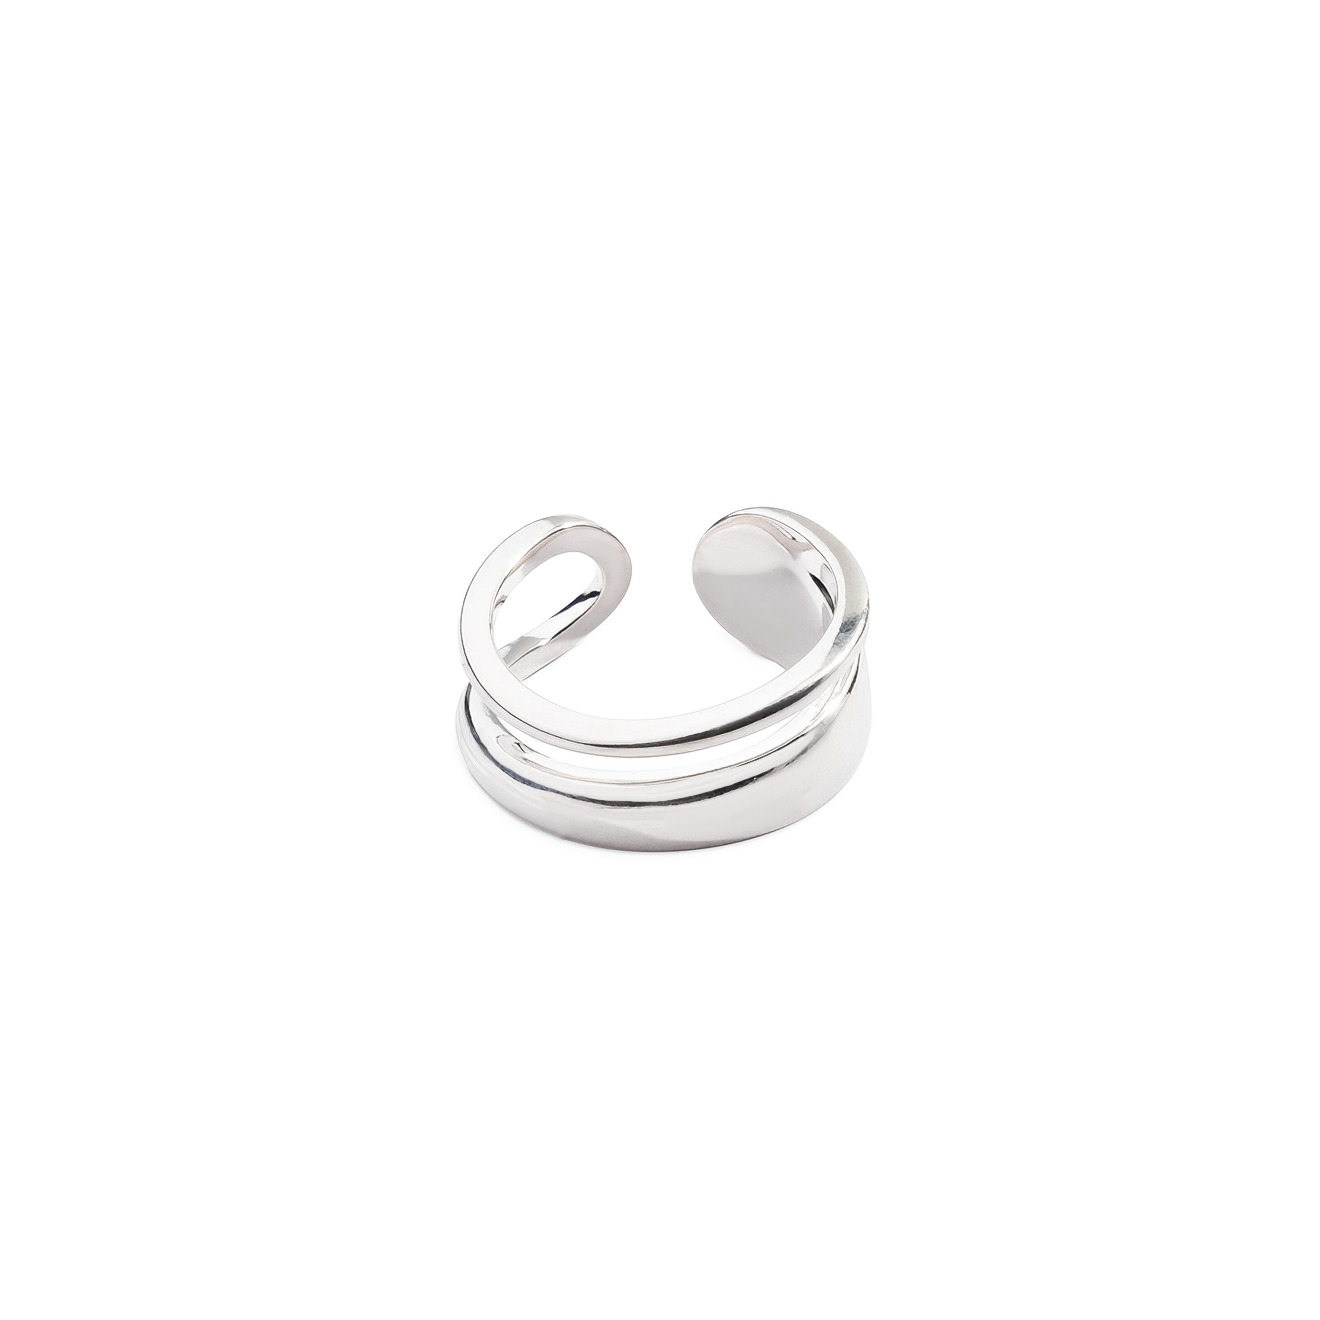 Philippe Audibert Незамкнутое двойное кольцо, покрытое серебром philippe audibert колье цепь с разными звеньями yatus покрытое серебром